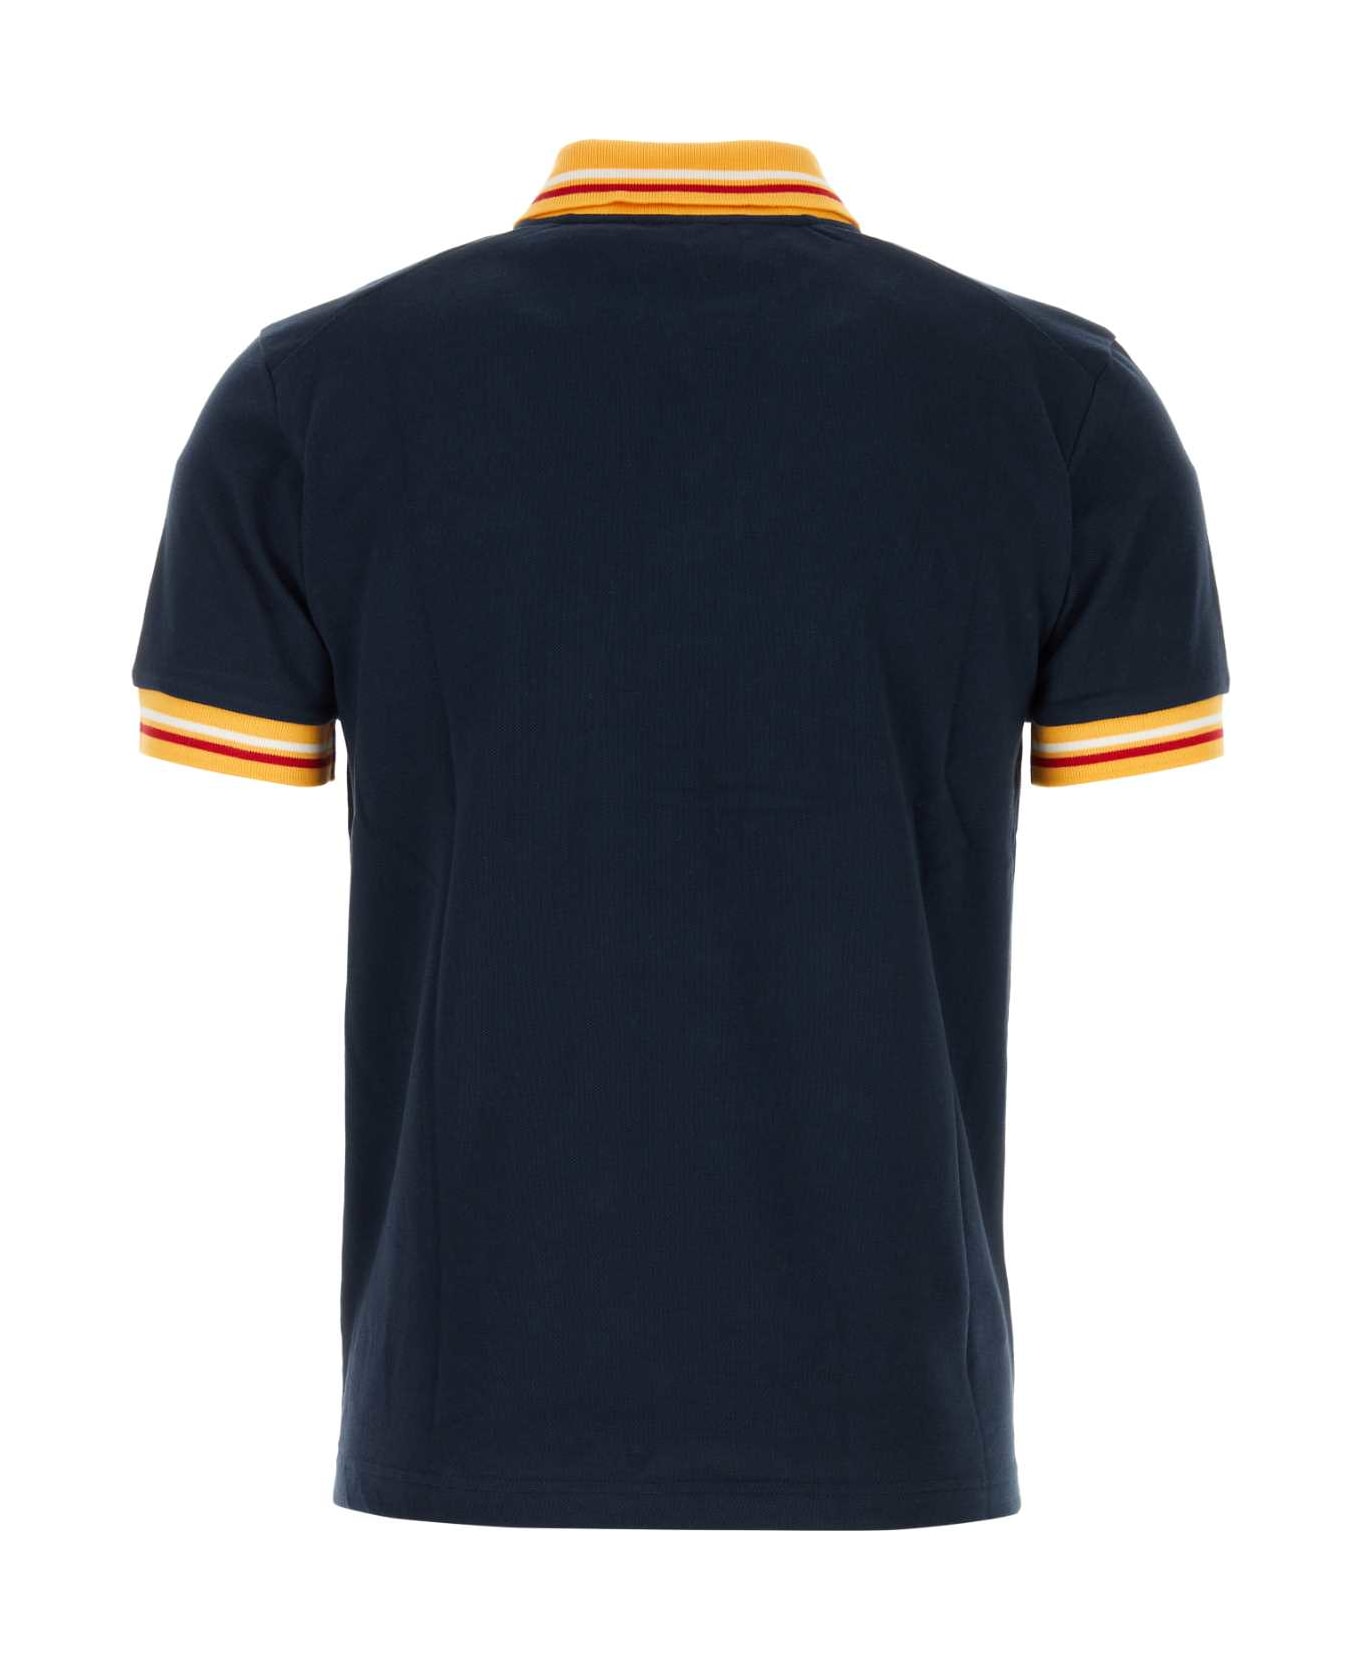 Wales Bonner Navy Blue Piquet Sun Polo Shirt - NAVY ポロシャツ